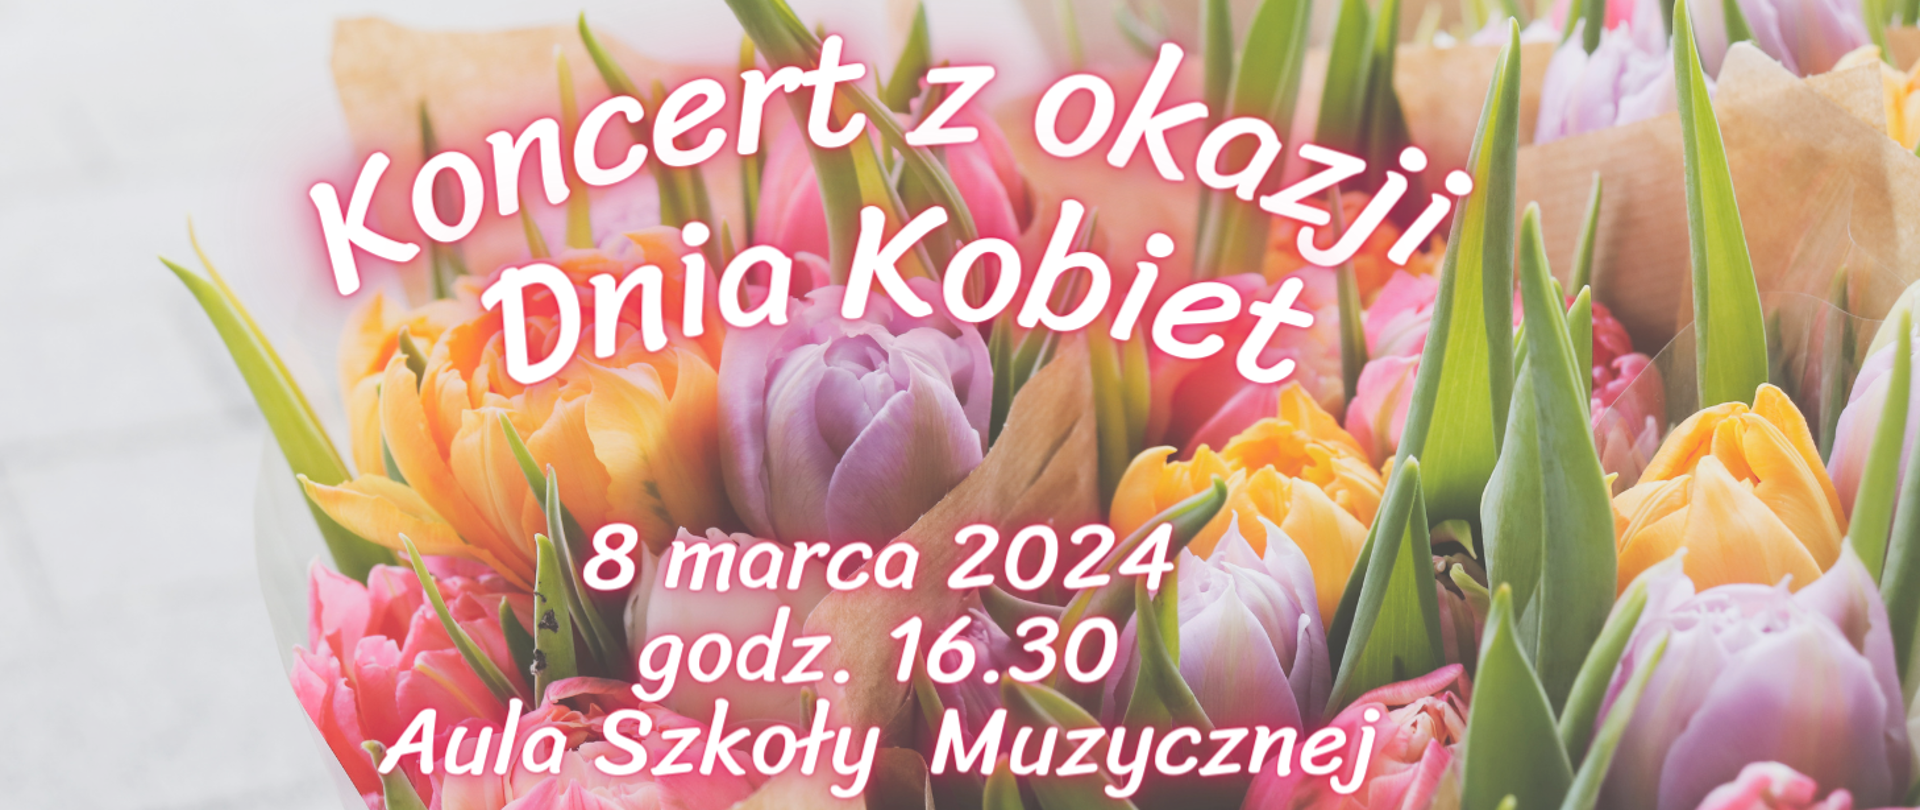 Plakat przedstawia kwiaty jako tło i napis Koncert z Okazji Dnia Kobiet